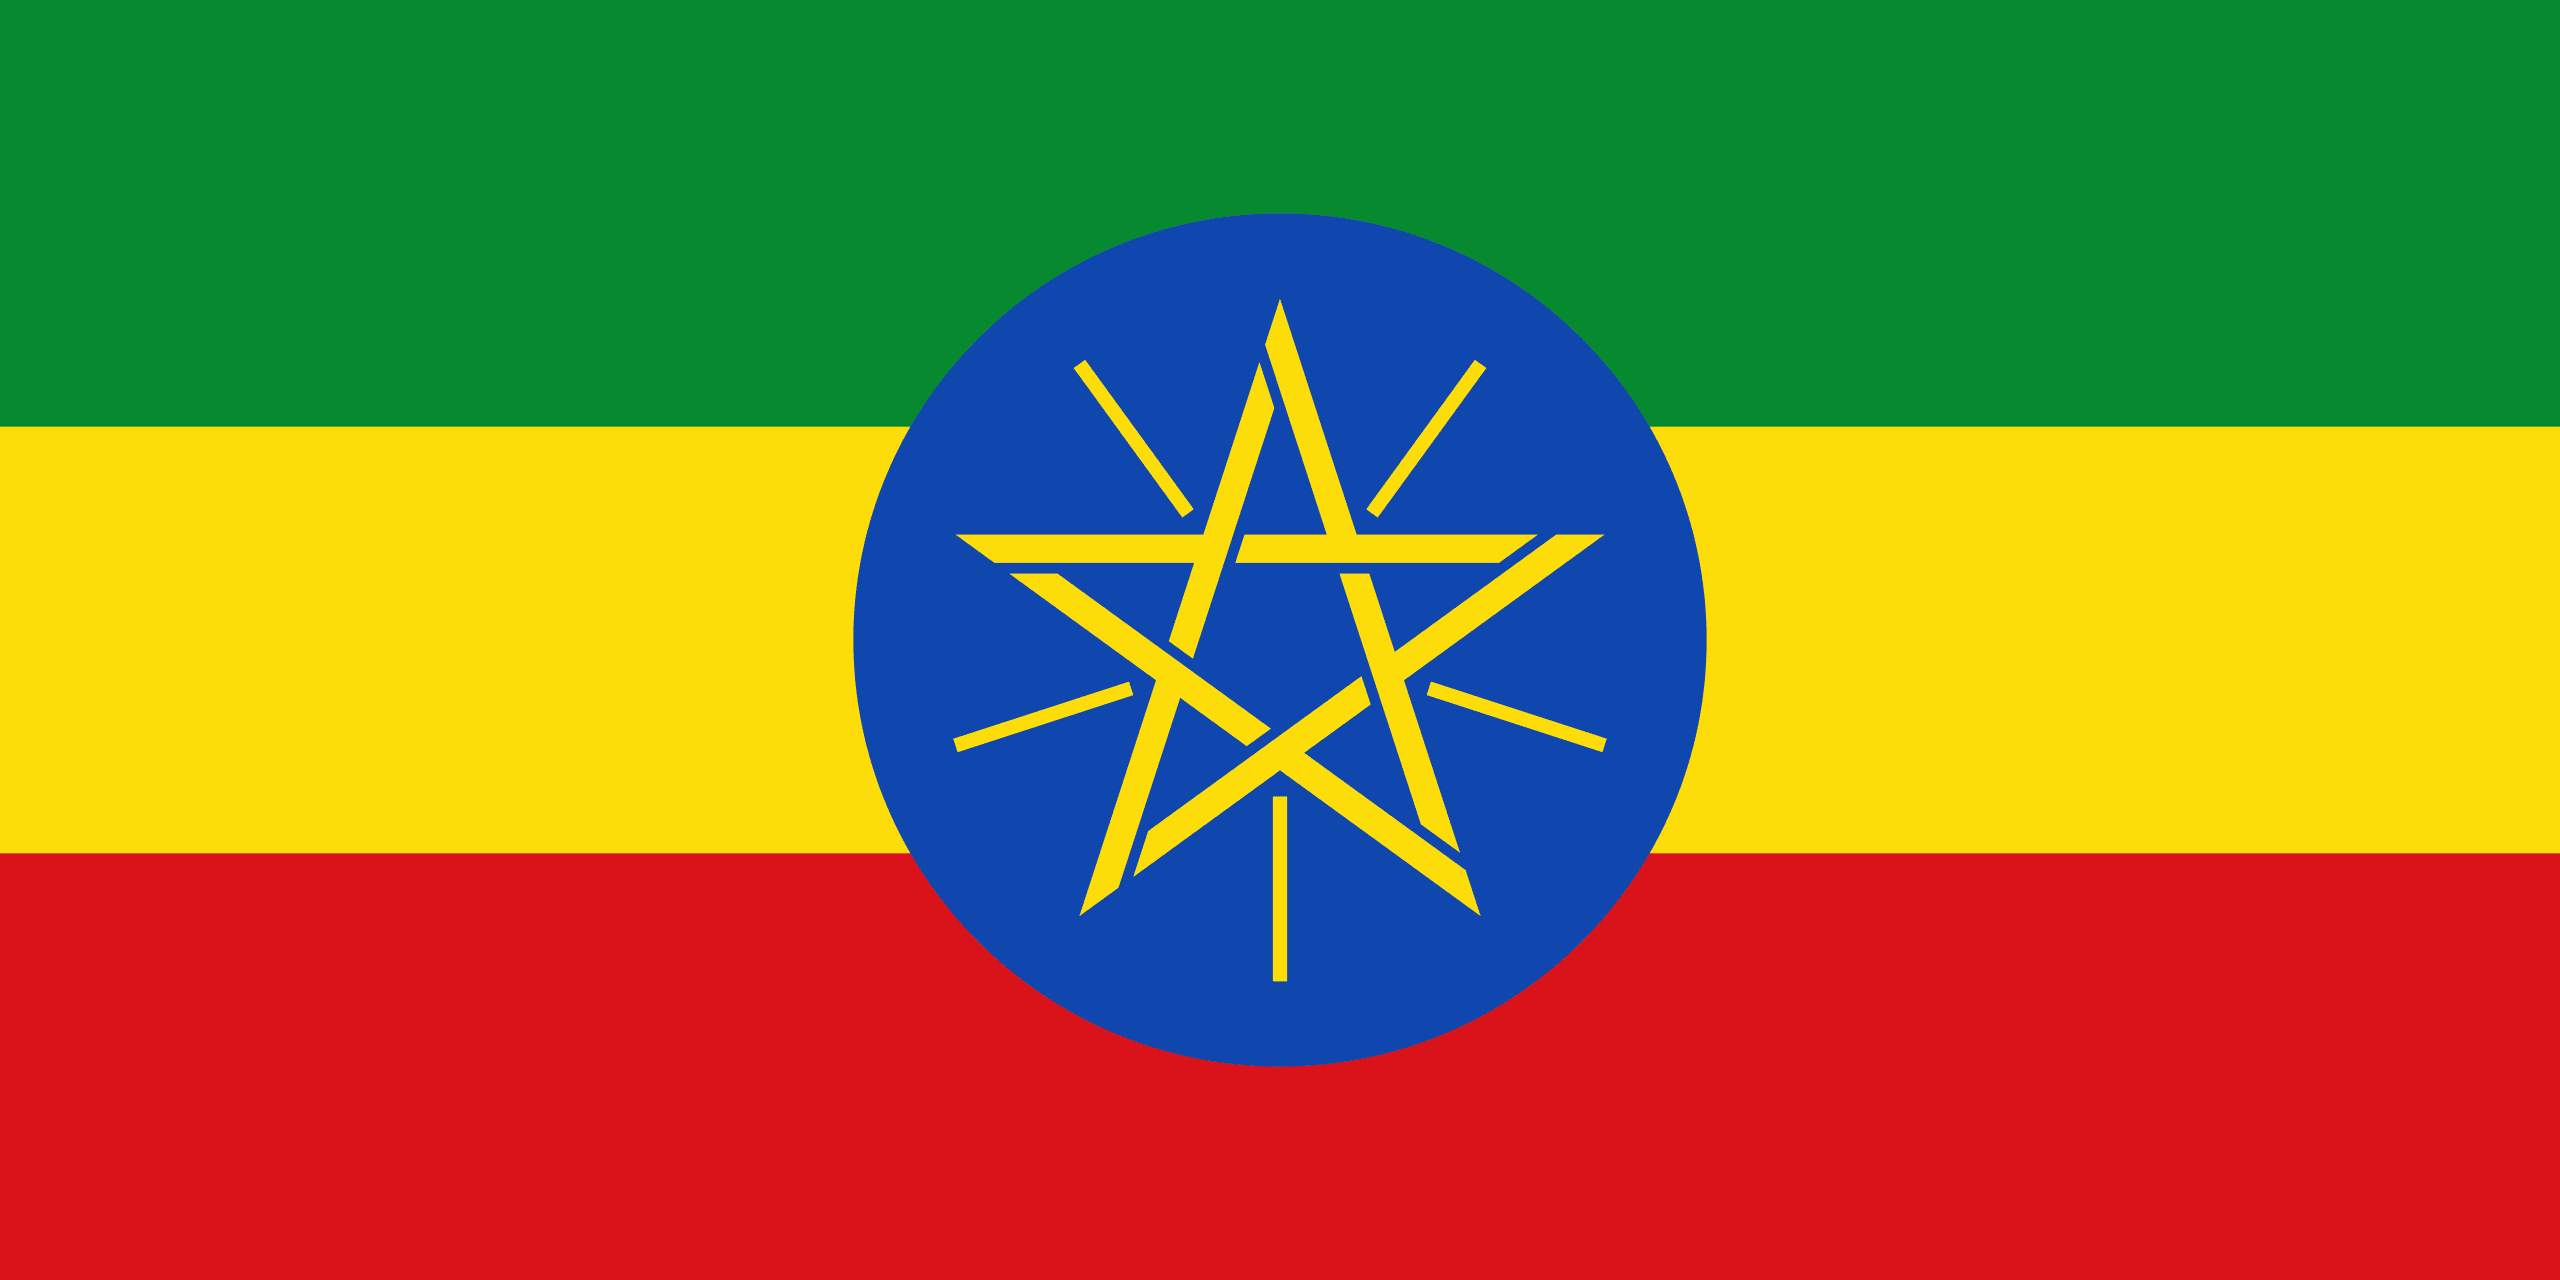 Facts of Ethiopia